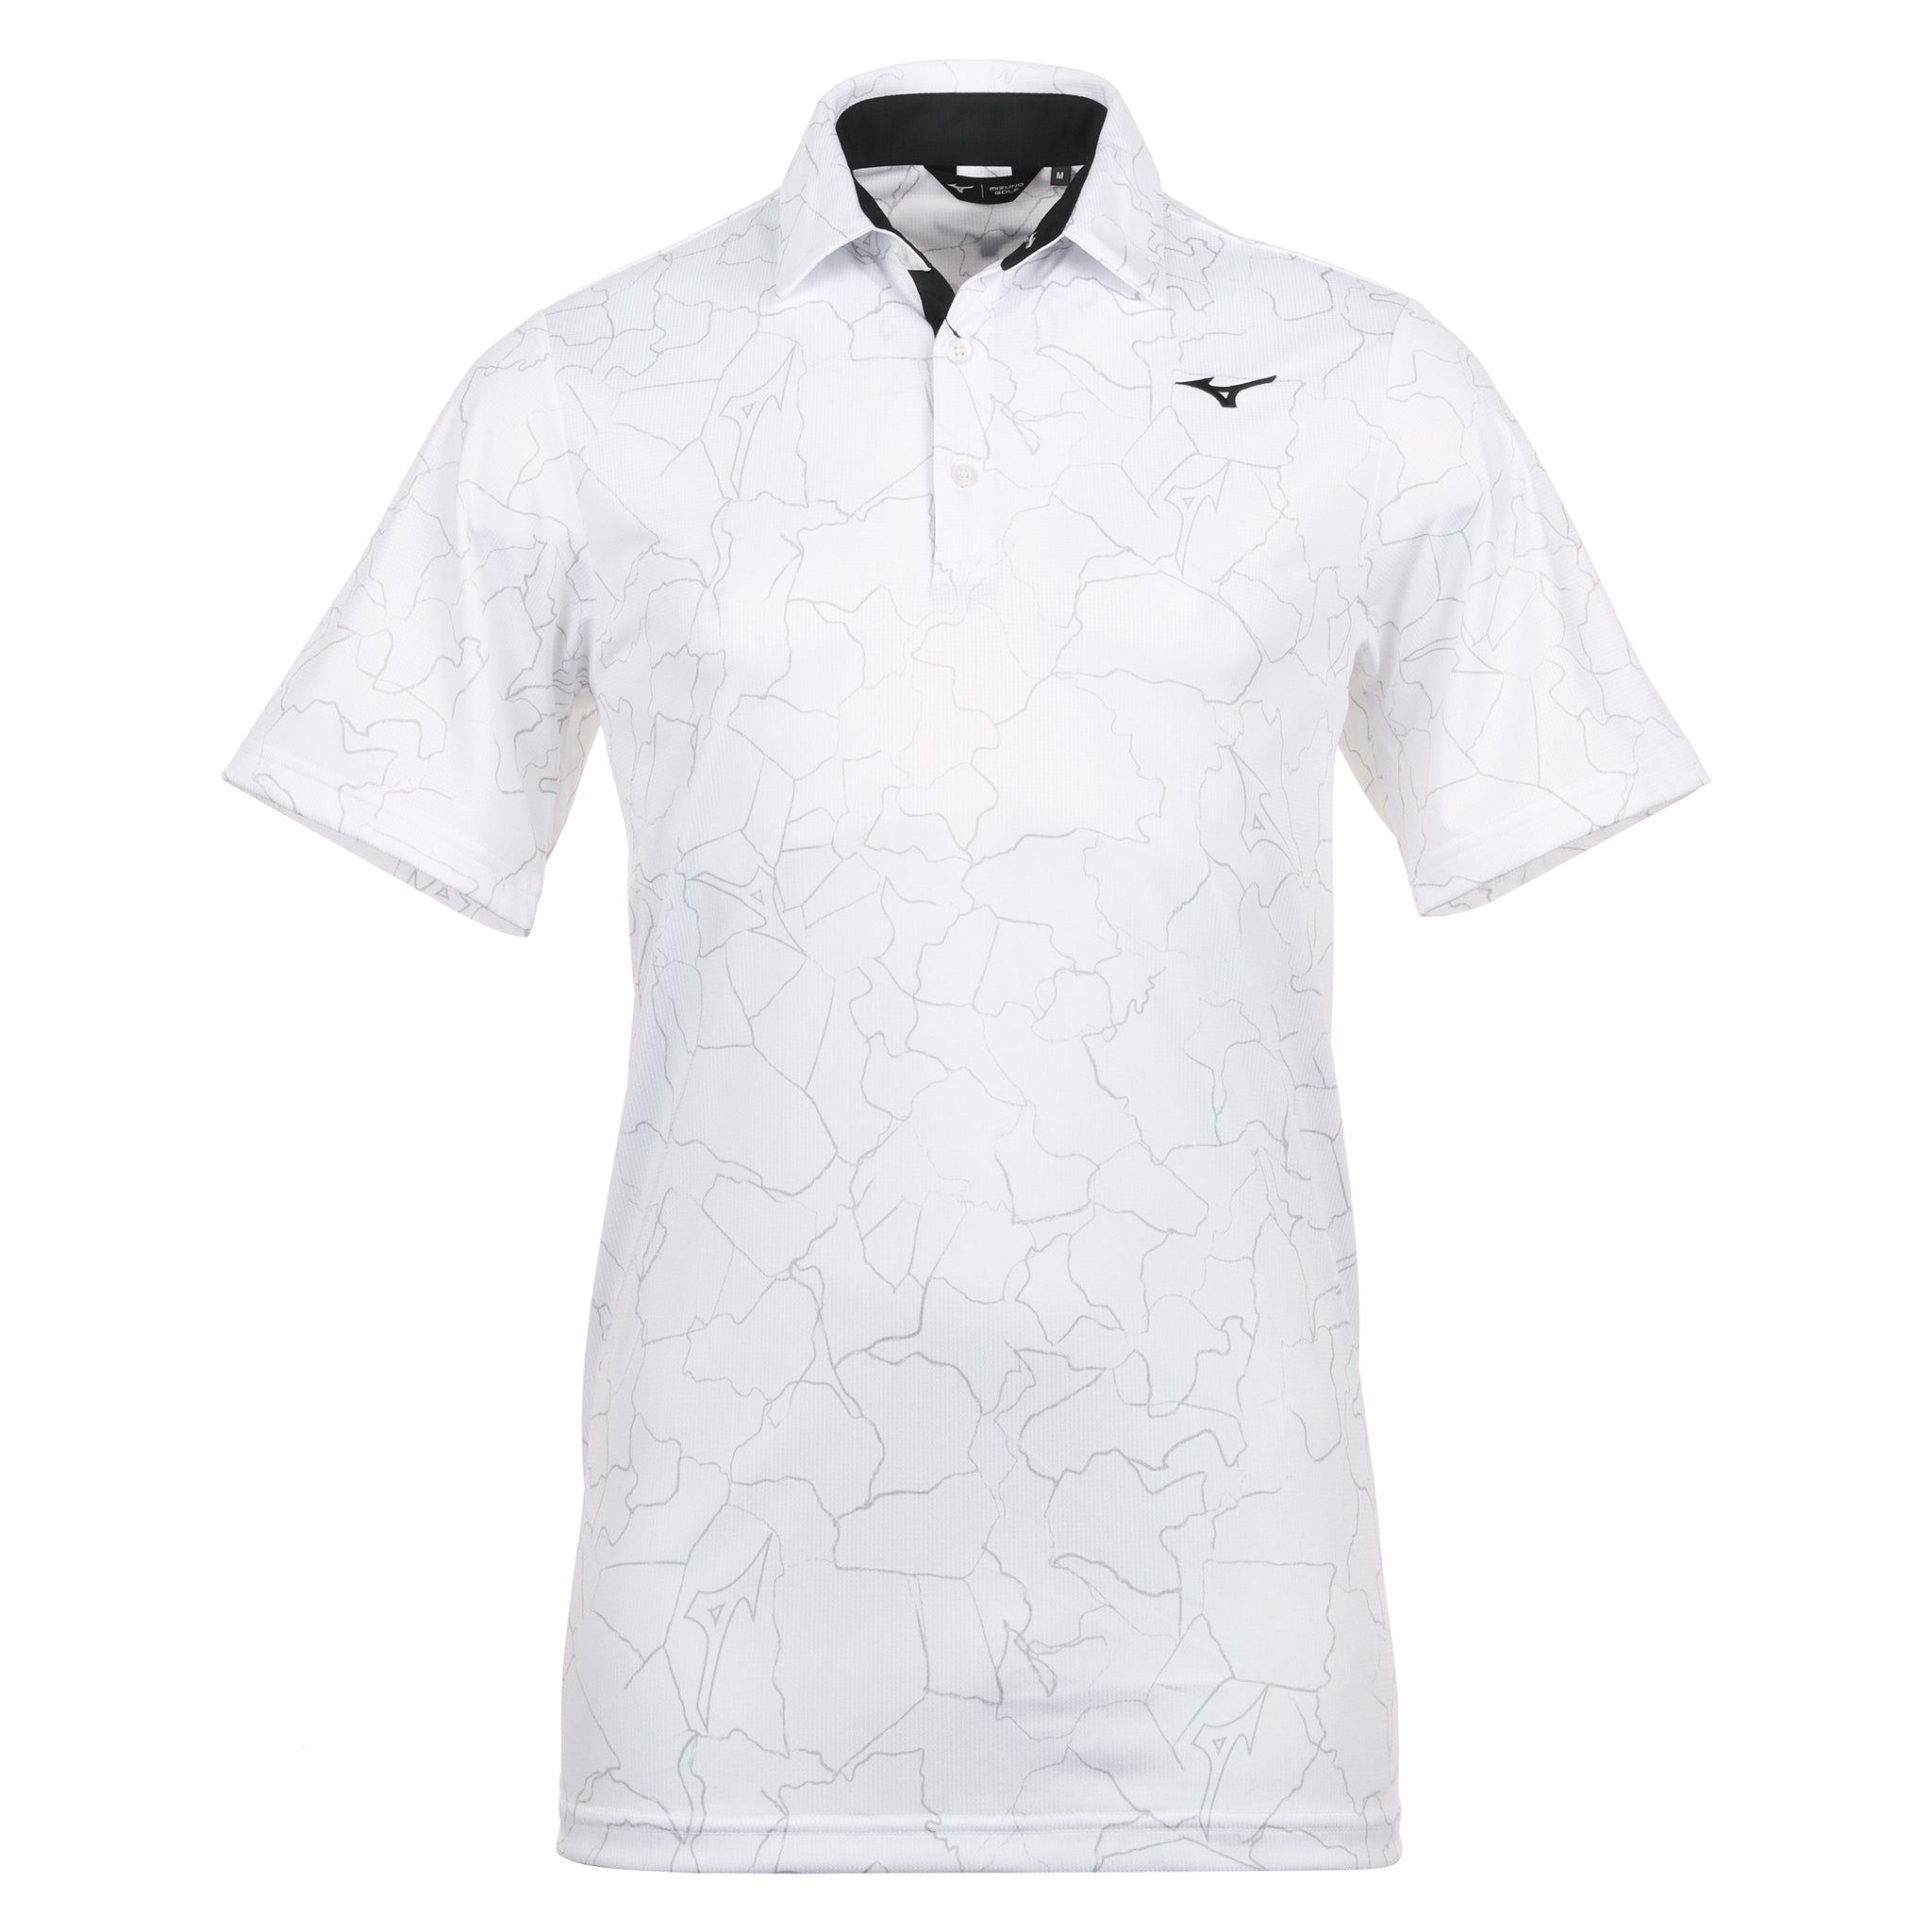 Mizuno Golf Fragma Polo Shirt